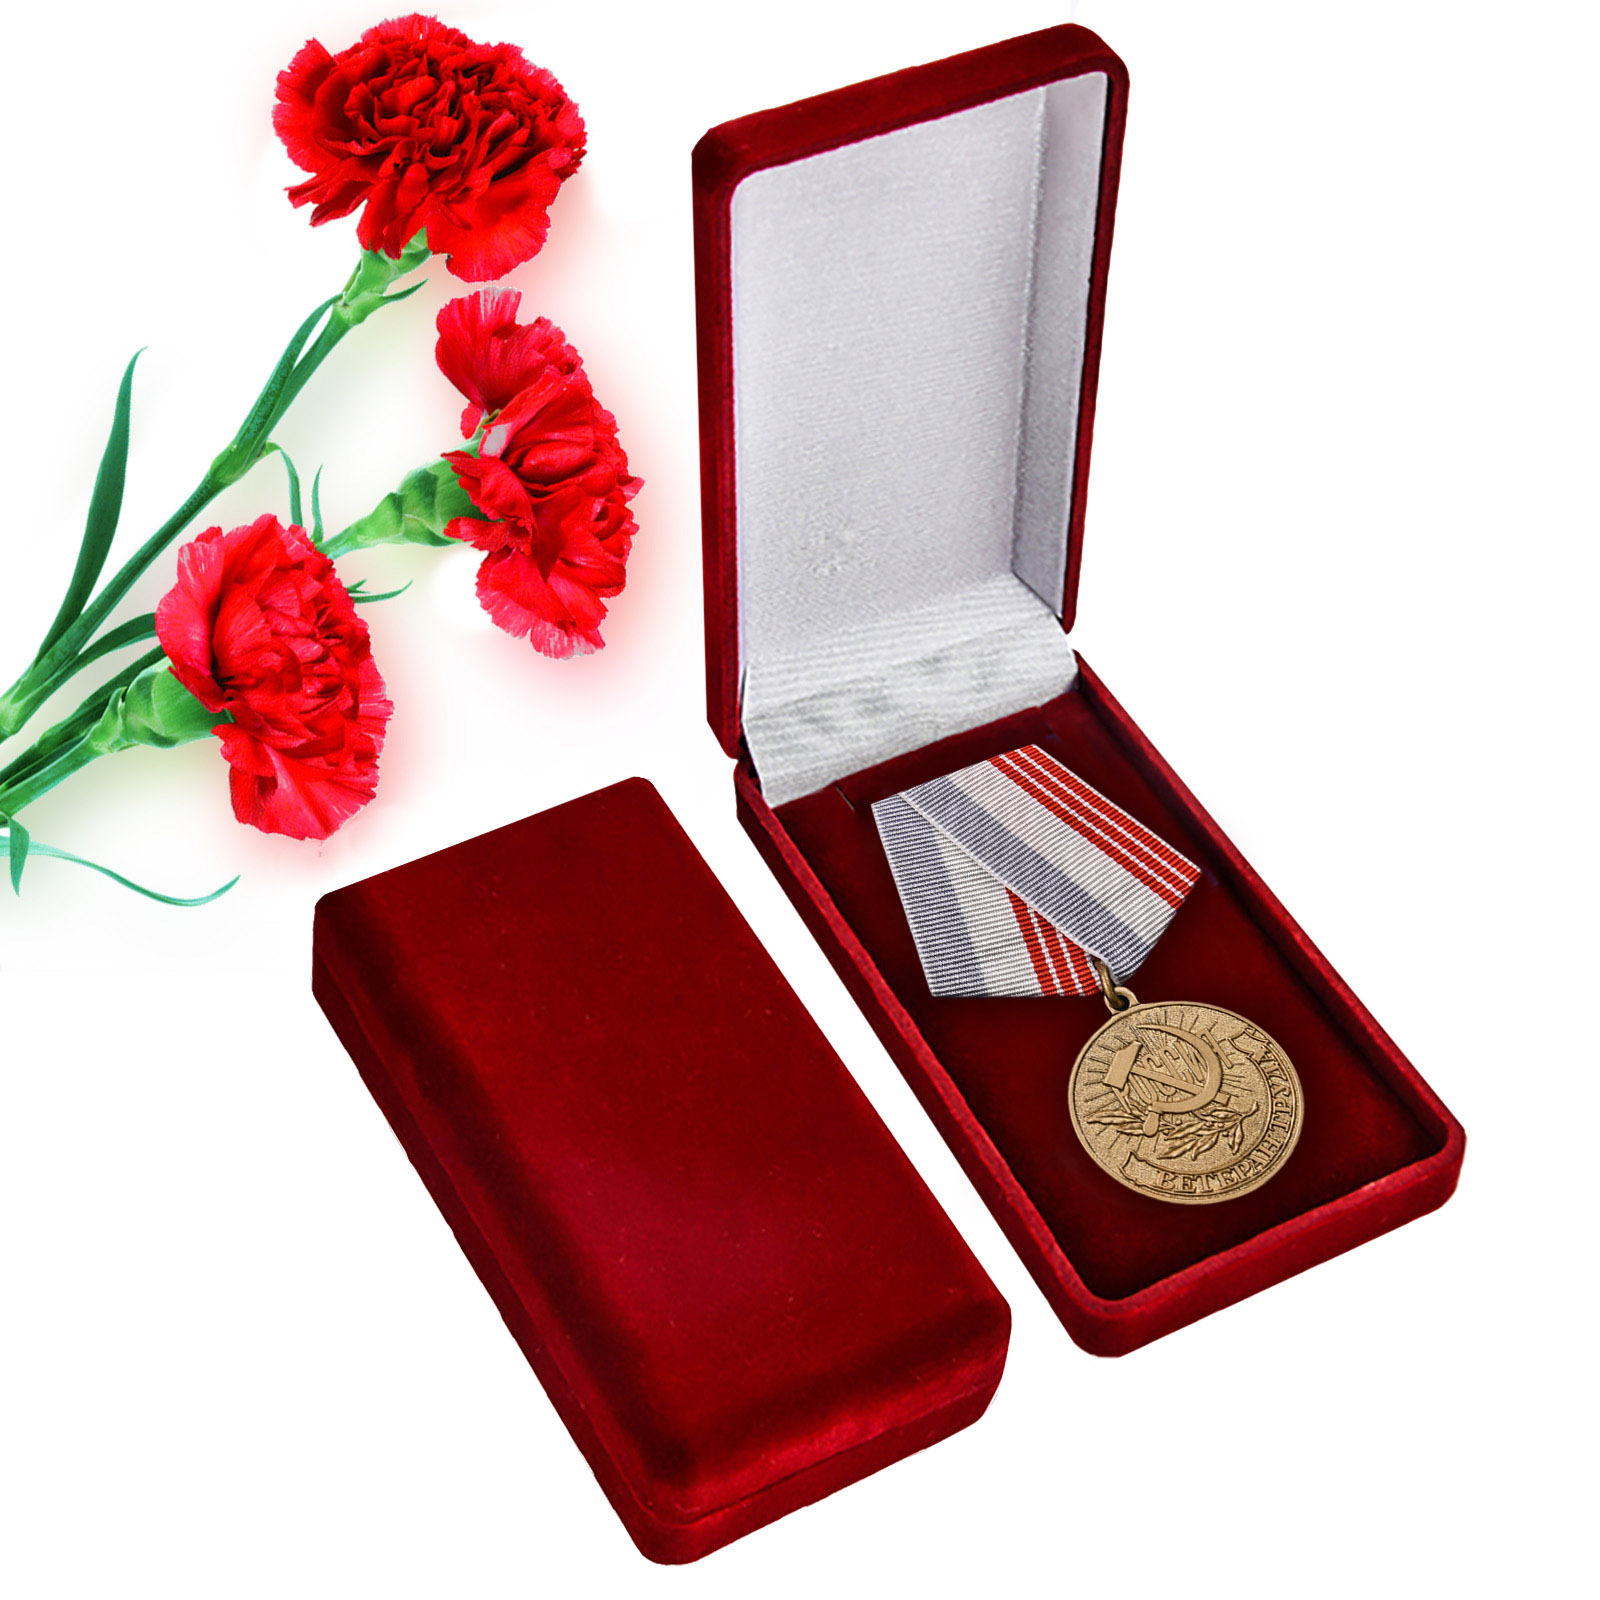 Купить латунную медаль Ветеран труда России с доставкой или самовывозом